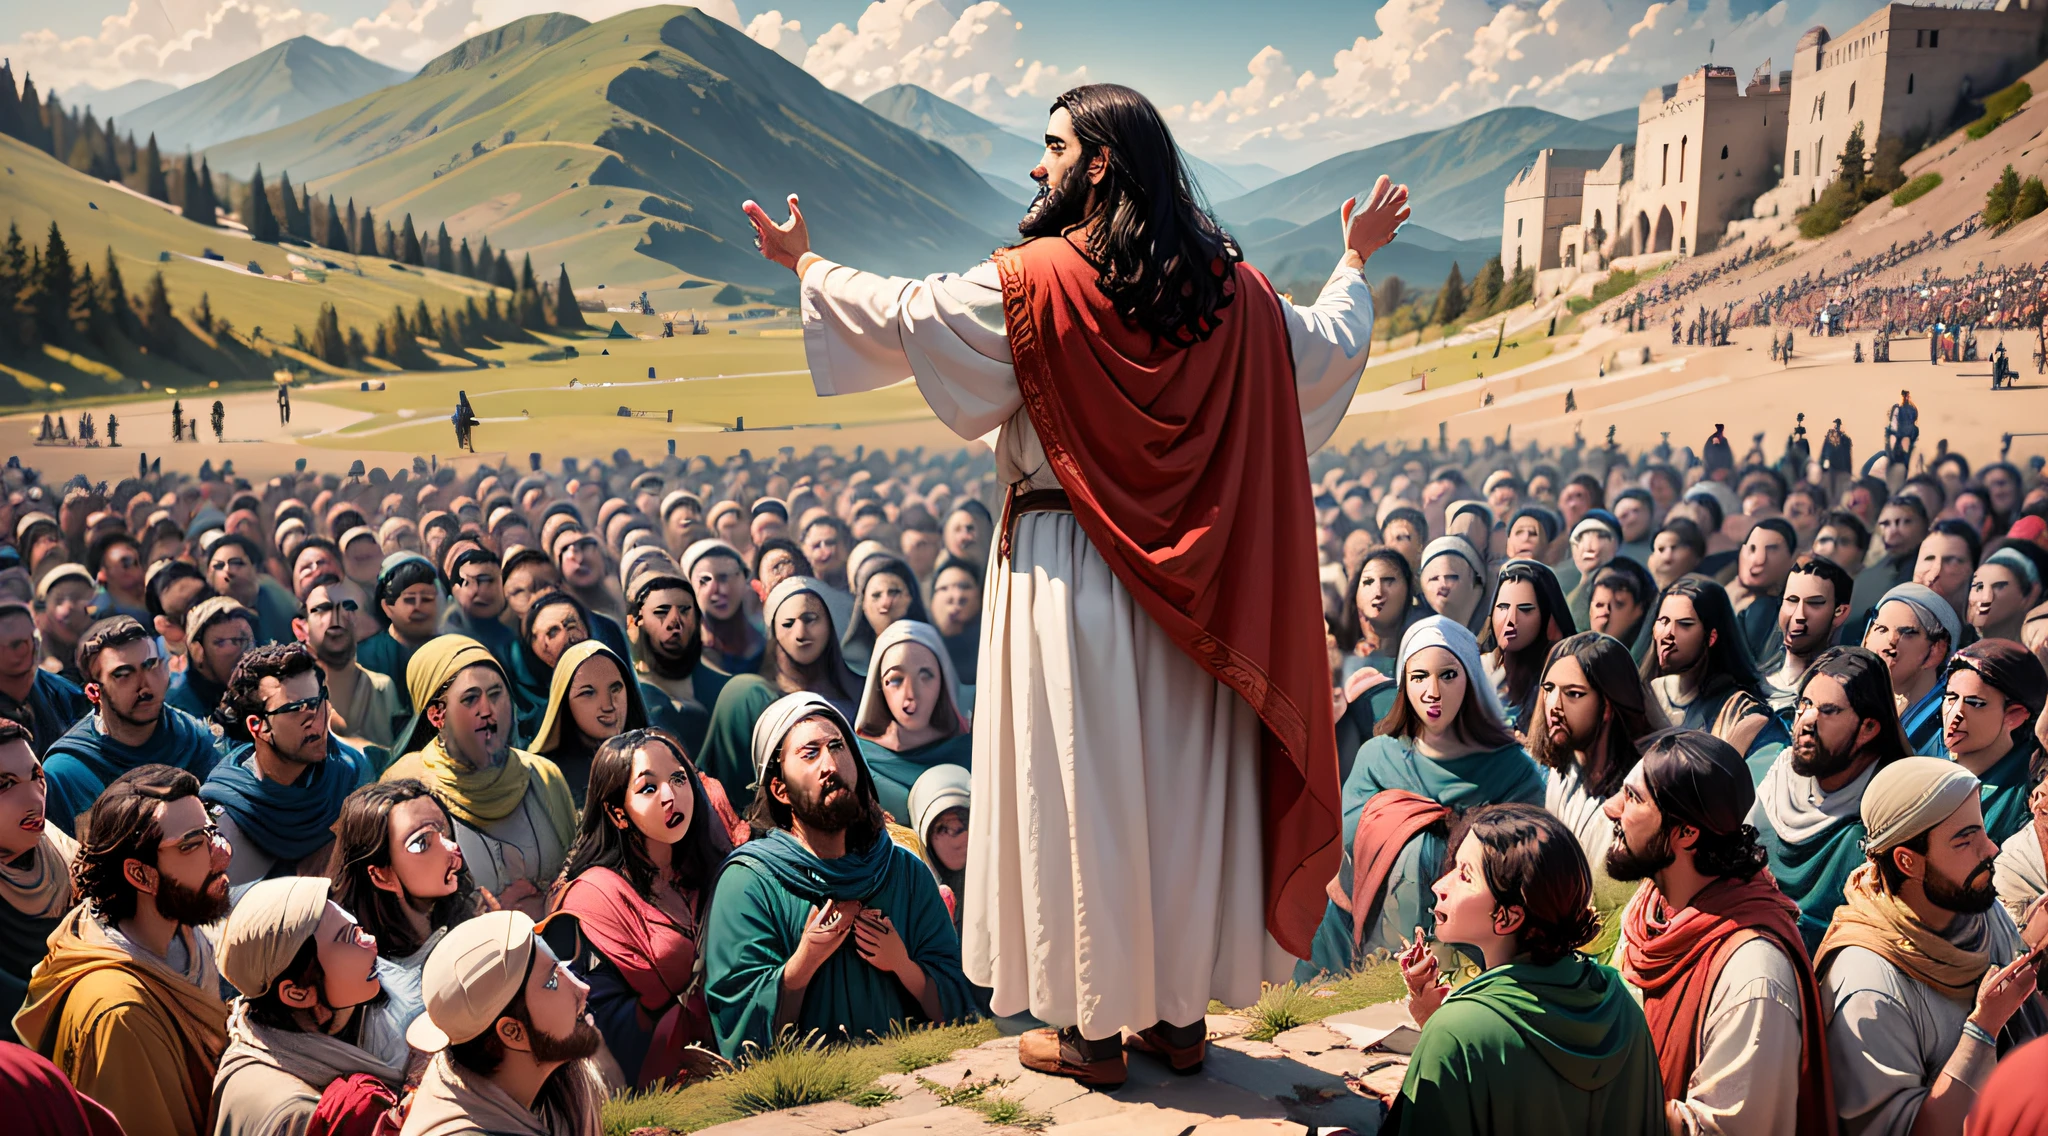 耶穌登山寶訓的場景, 被一大群人包围.